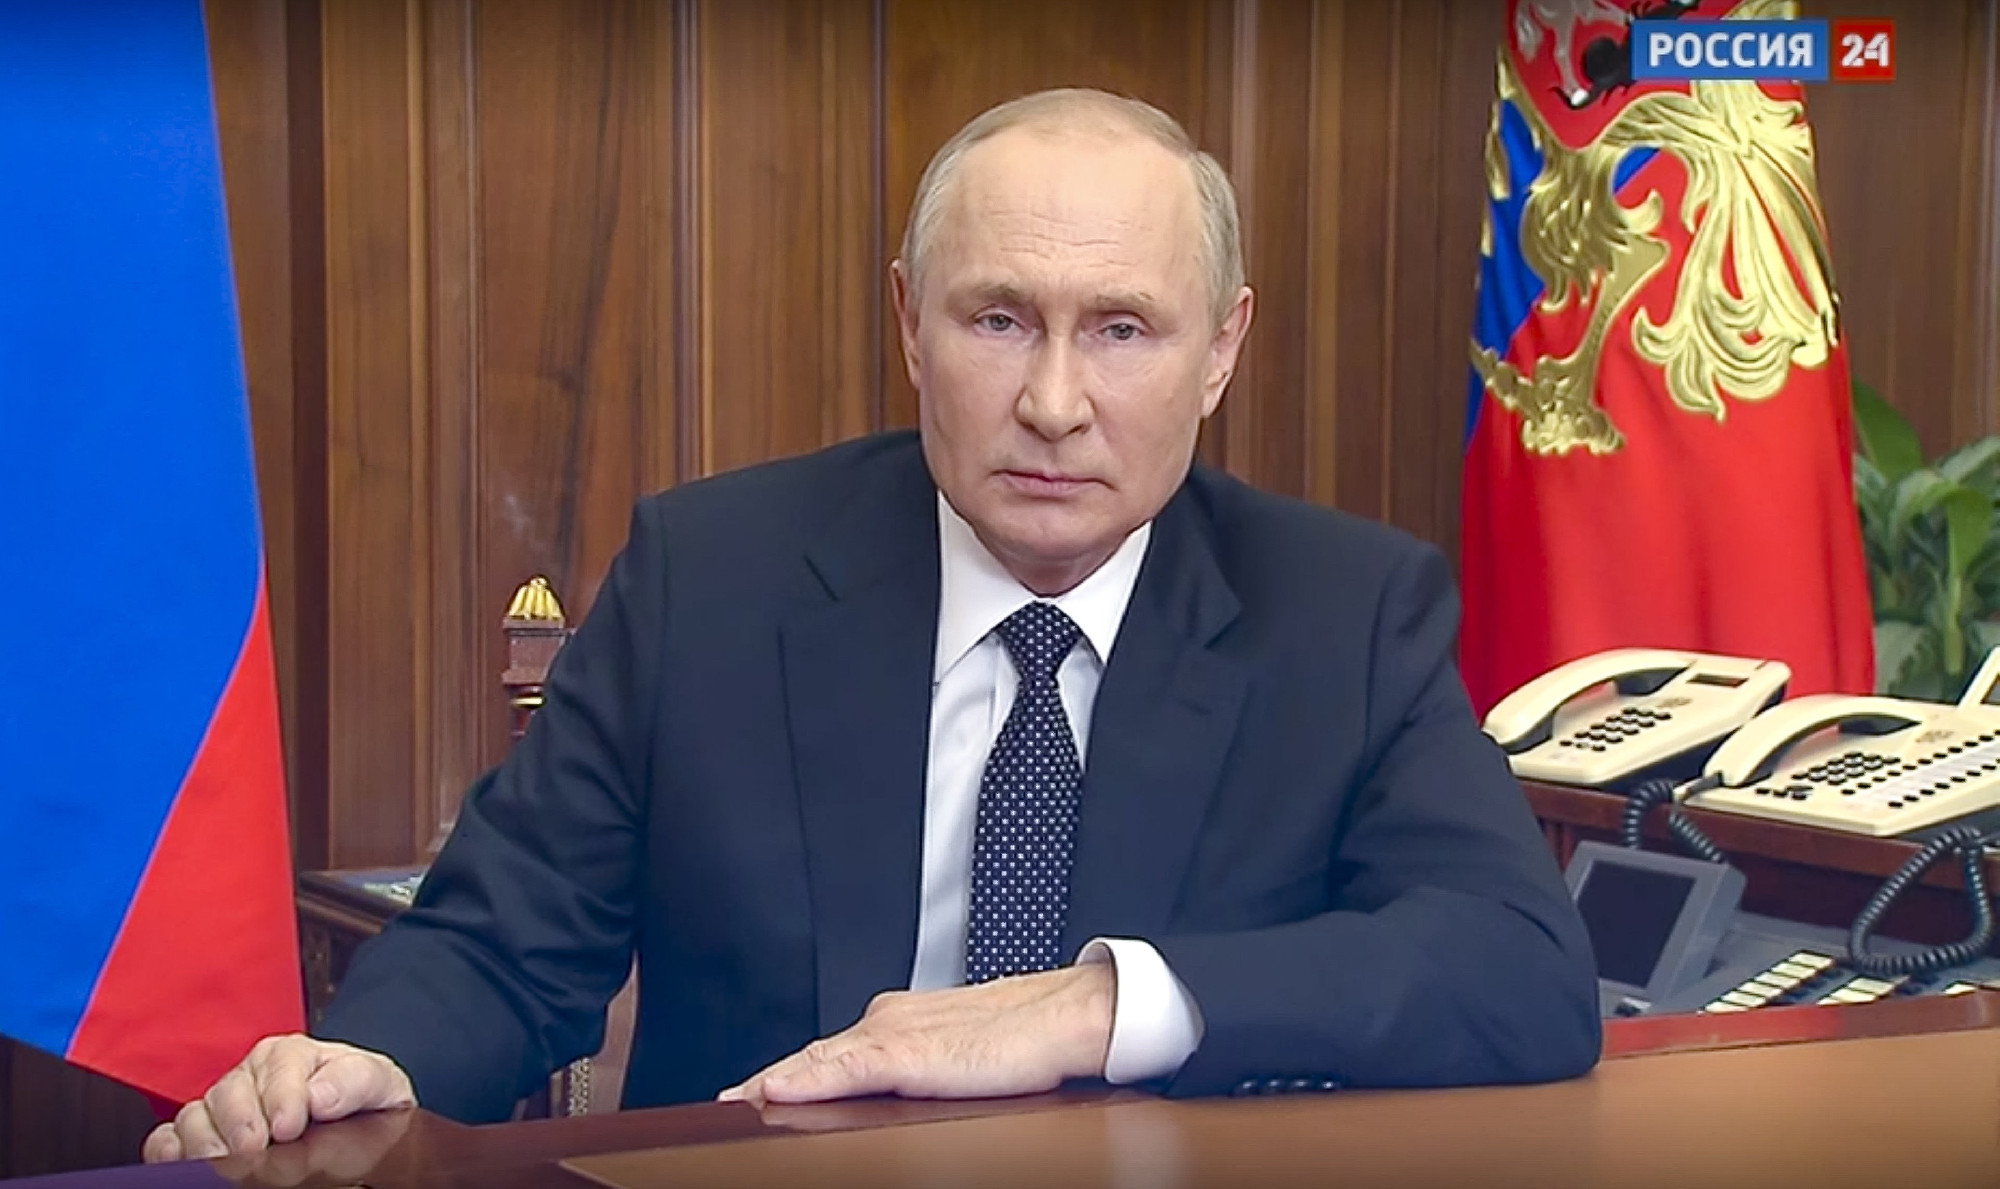 Reagált a külügy is arra, hogy Putyin szerint lehetnének területi követeléseink Ukrajnával szemben